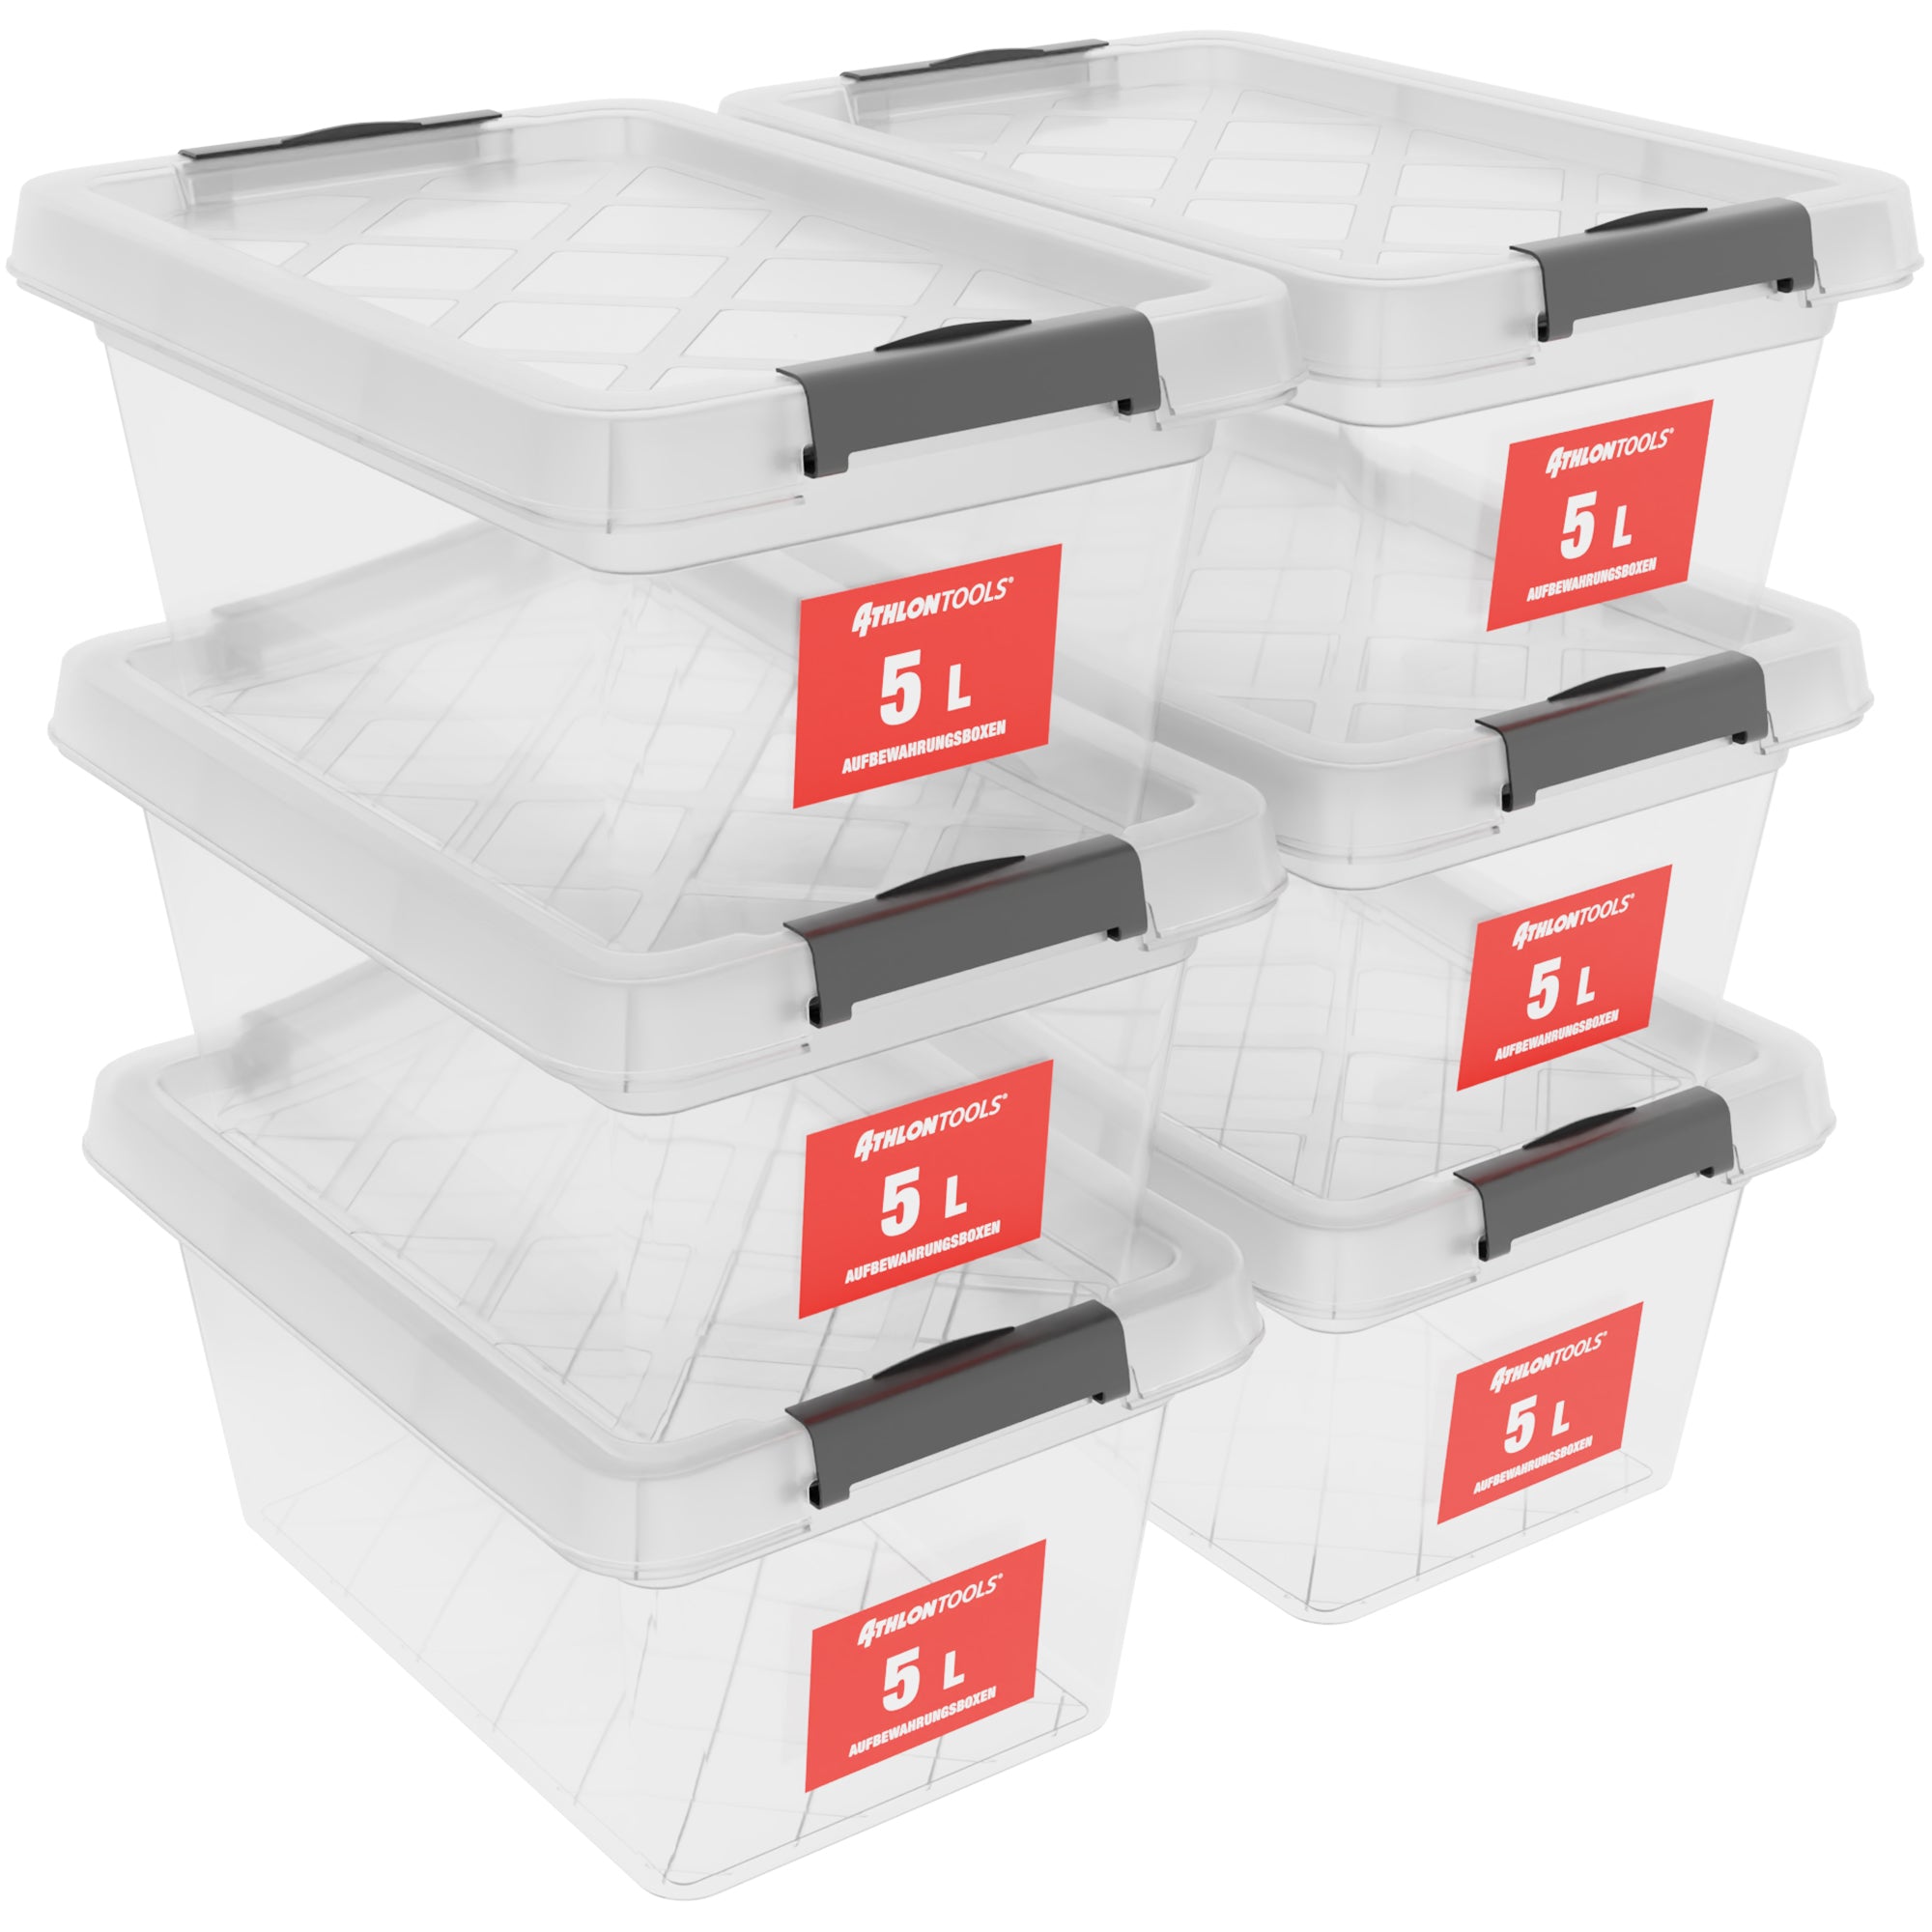 6x 5 L Aufbewahrungsboxen mit Deckel – ATHLON TOOLS